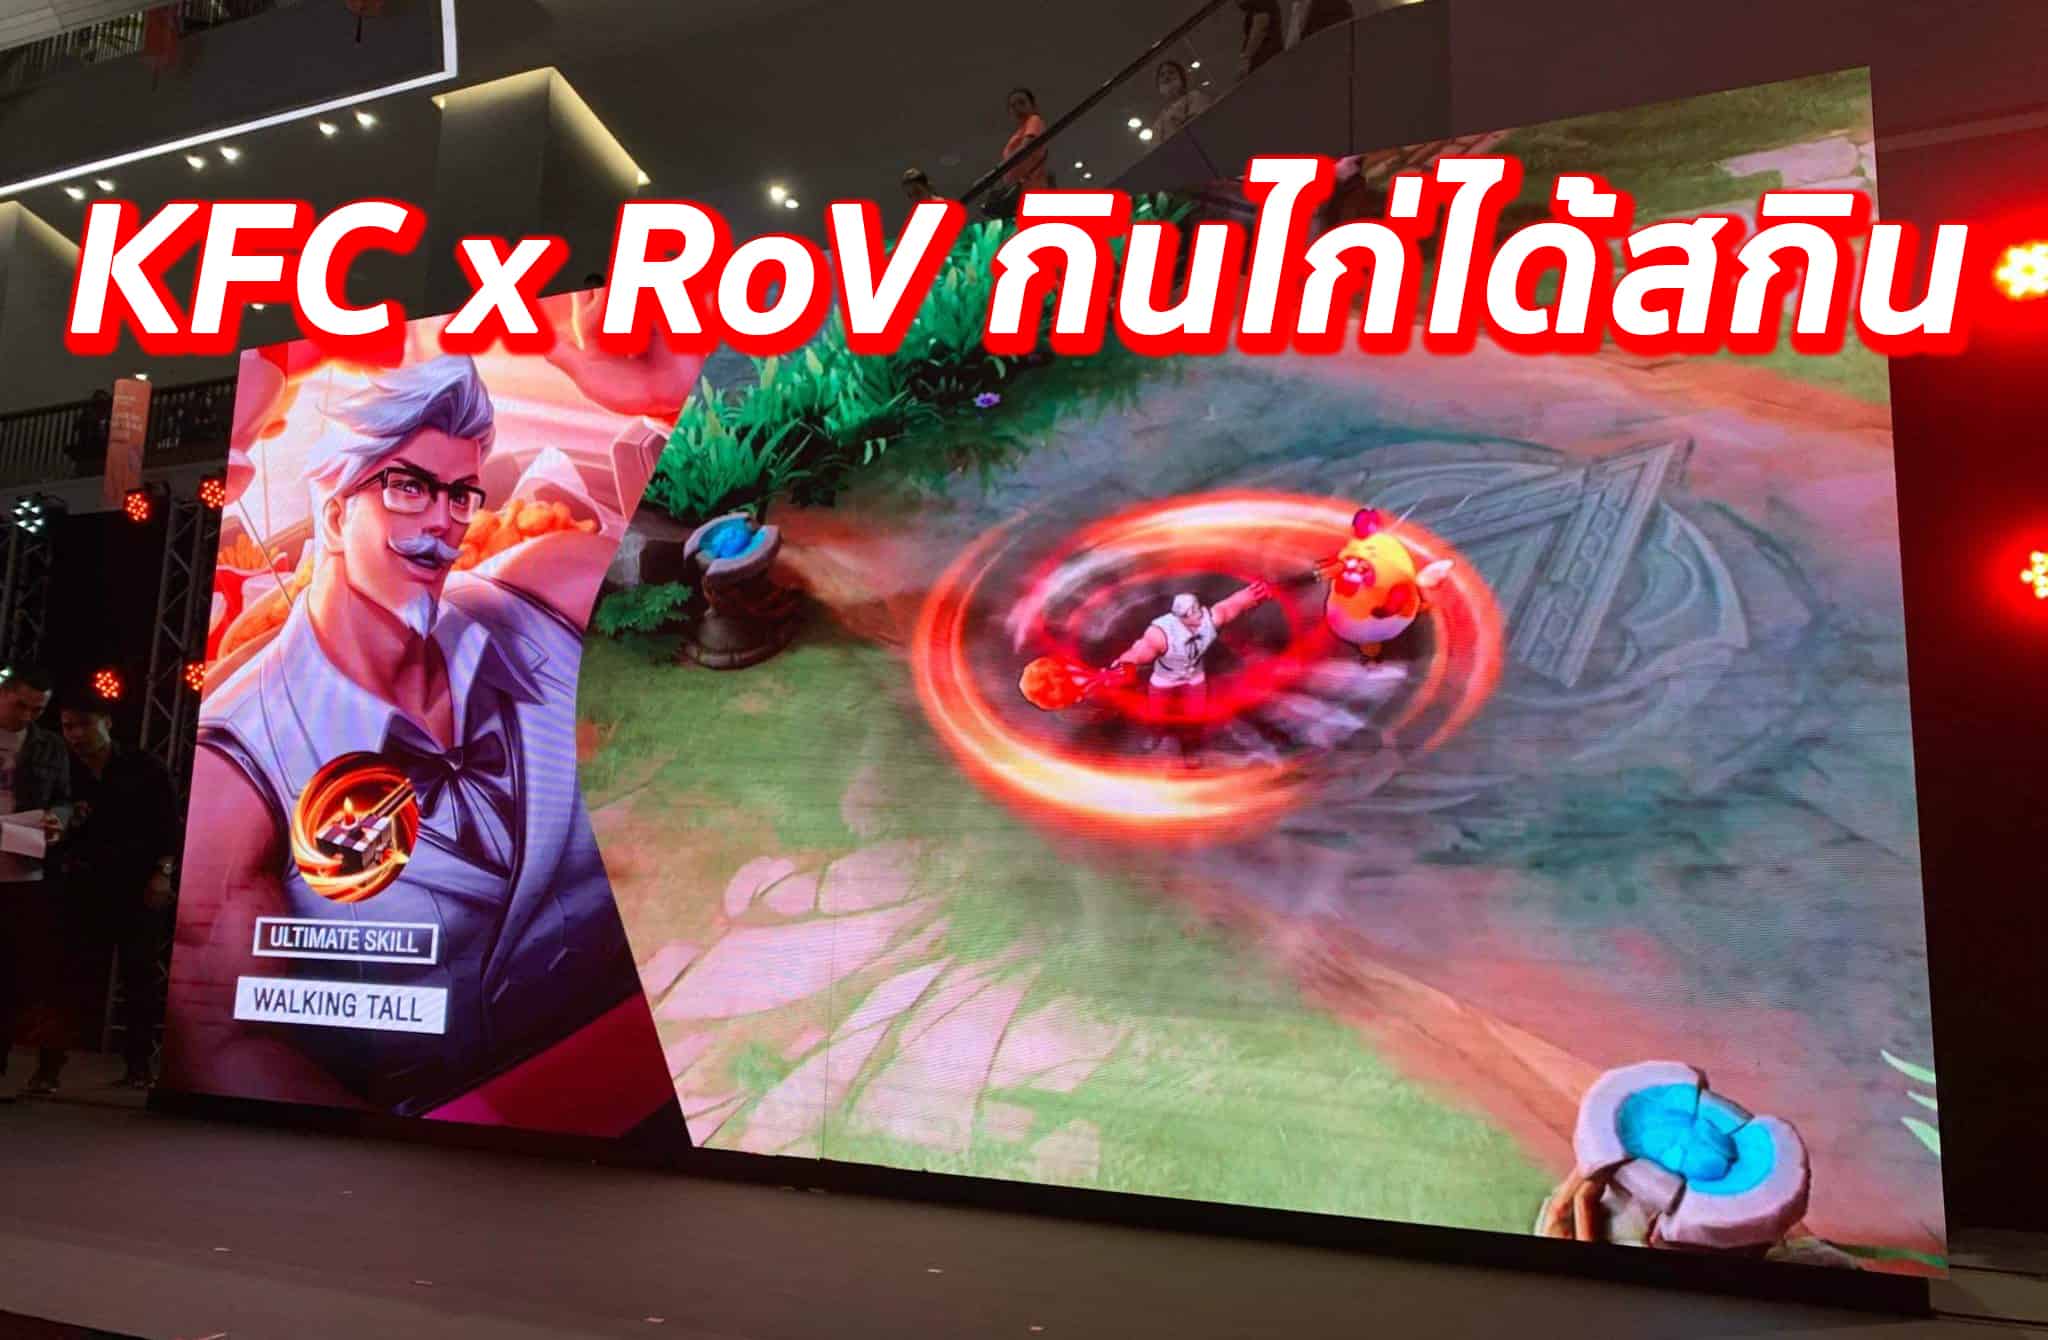 KFC x RoV ซื้อไก่ลุ้นสกิล กับการคอลแลปที่สะเทือนวงการ